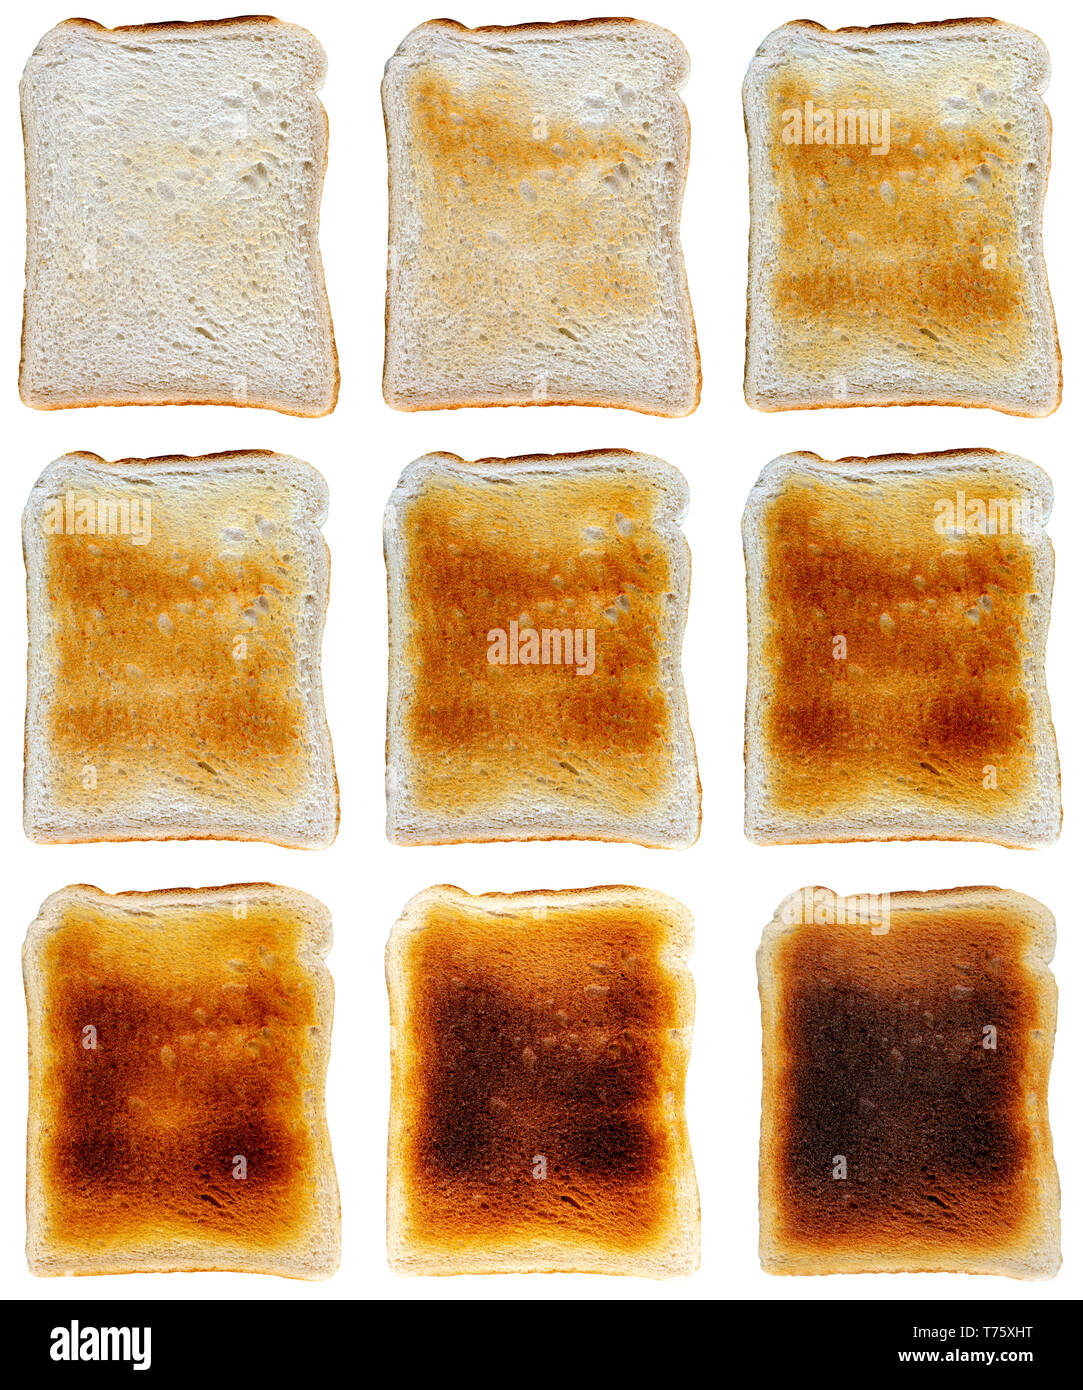 Toast auf verschiedenen Ebenen von sehr hellen verbrannt die Unterschiede zwischen den Menschen Geschmack zu reflektieren und in drei von drei Raster auf einem isolierten arrangiert getan Stockfoto